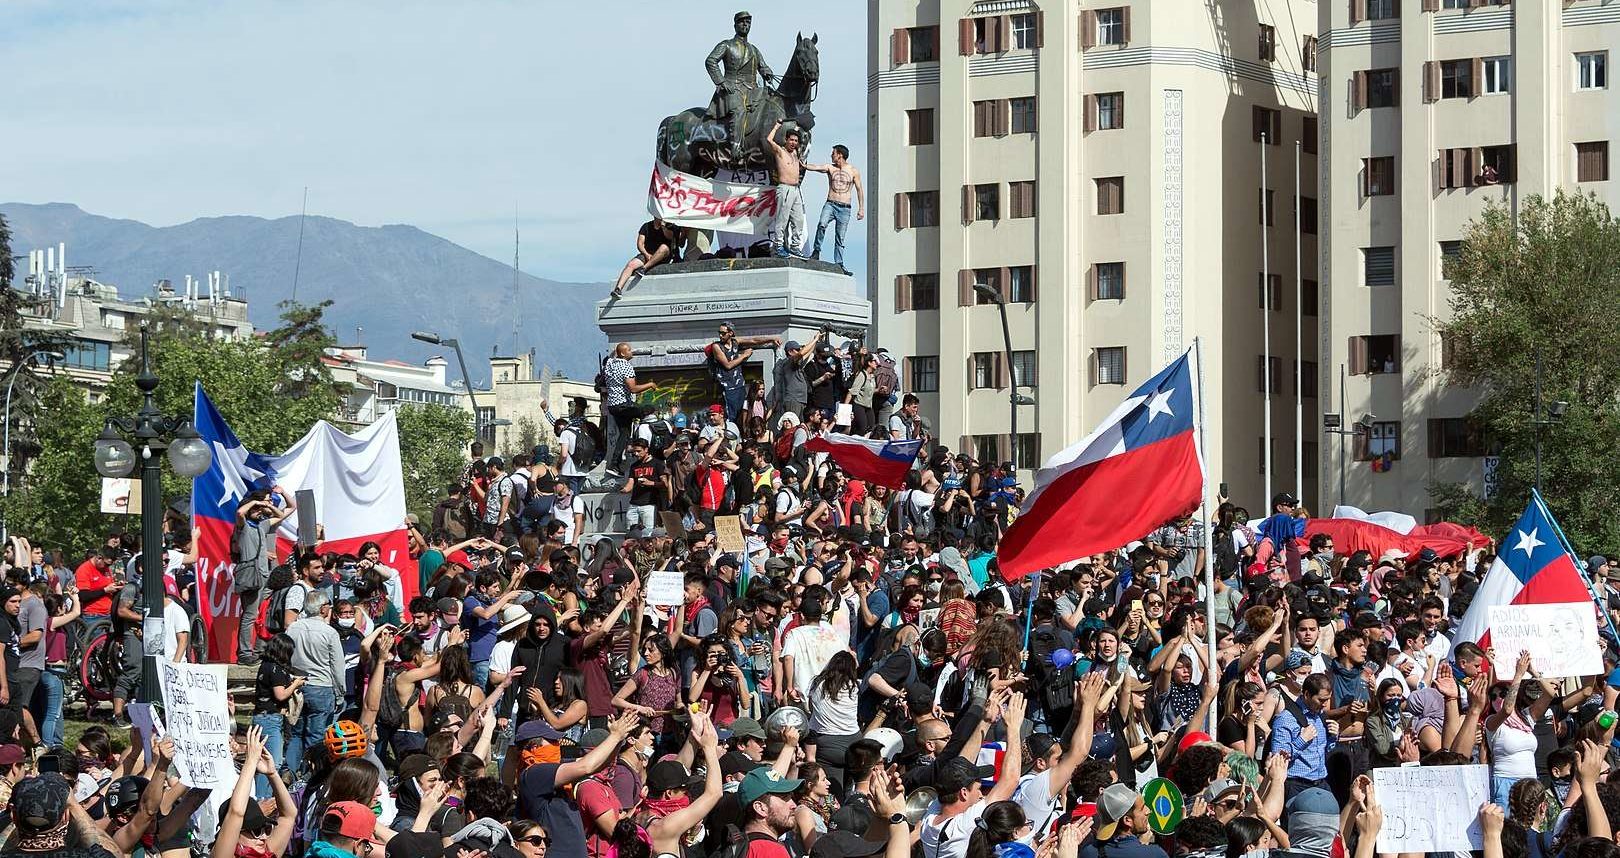 Manifestation de l Estallido social à Santiago du Chili le 22 octobre 2019. Photographie : Carlos Figueroa via wikimedia commons